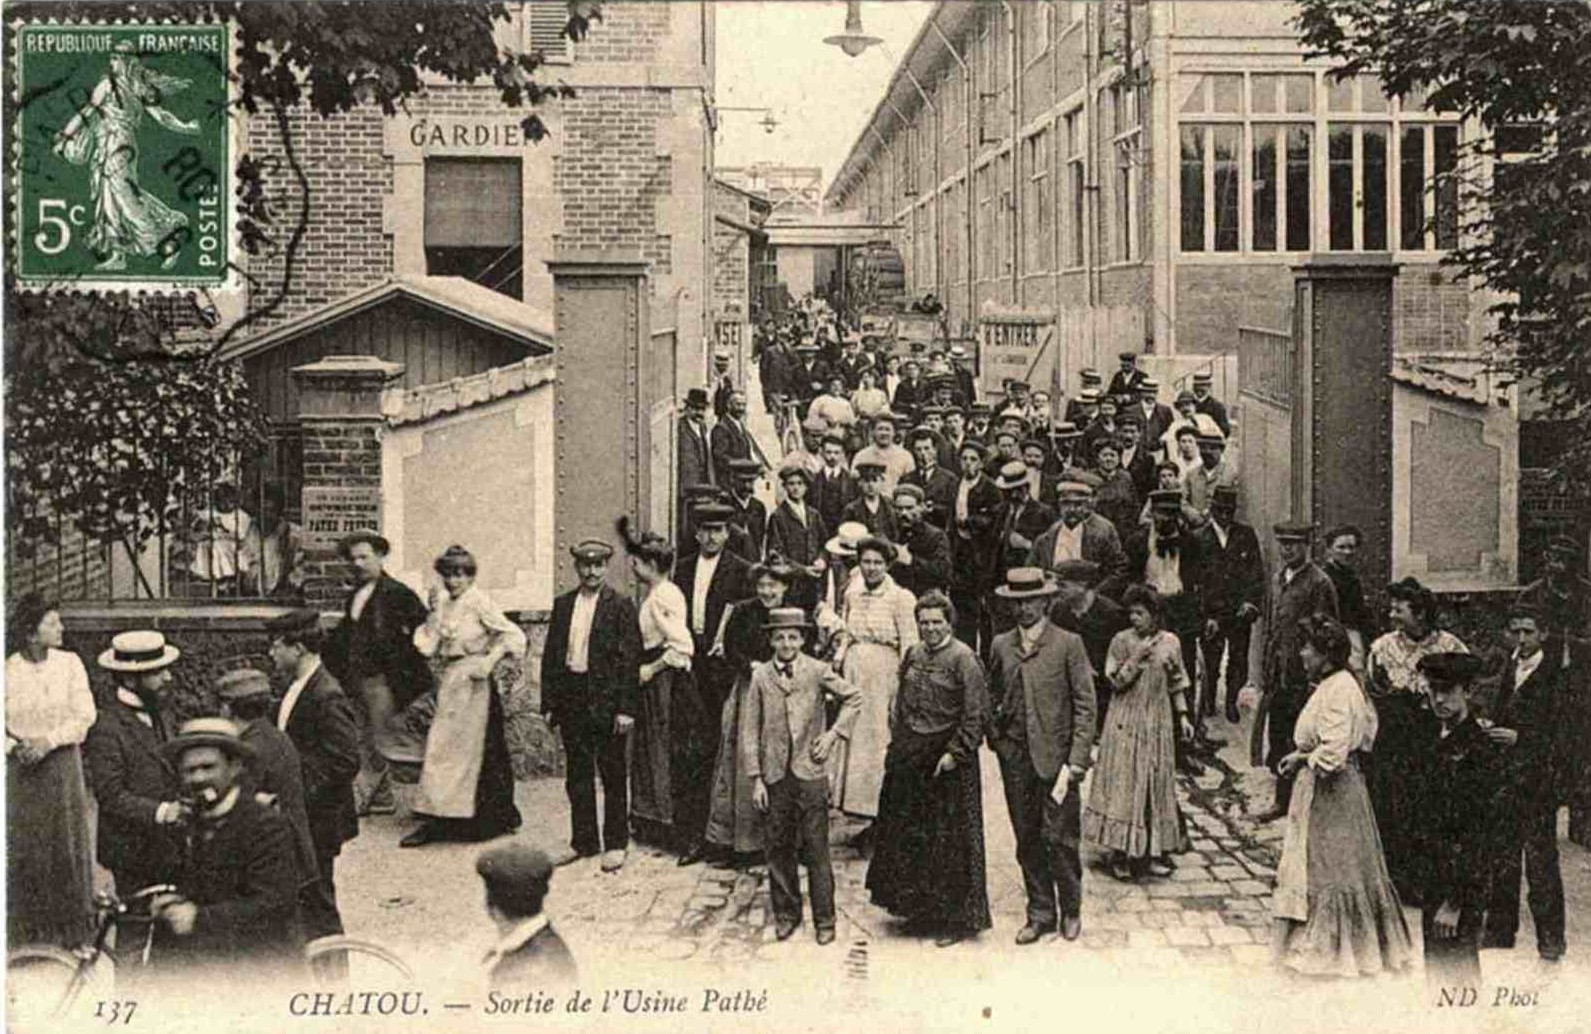 Chatou Sortie de l'Usine Pathé avant 1908.jpg